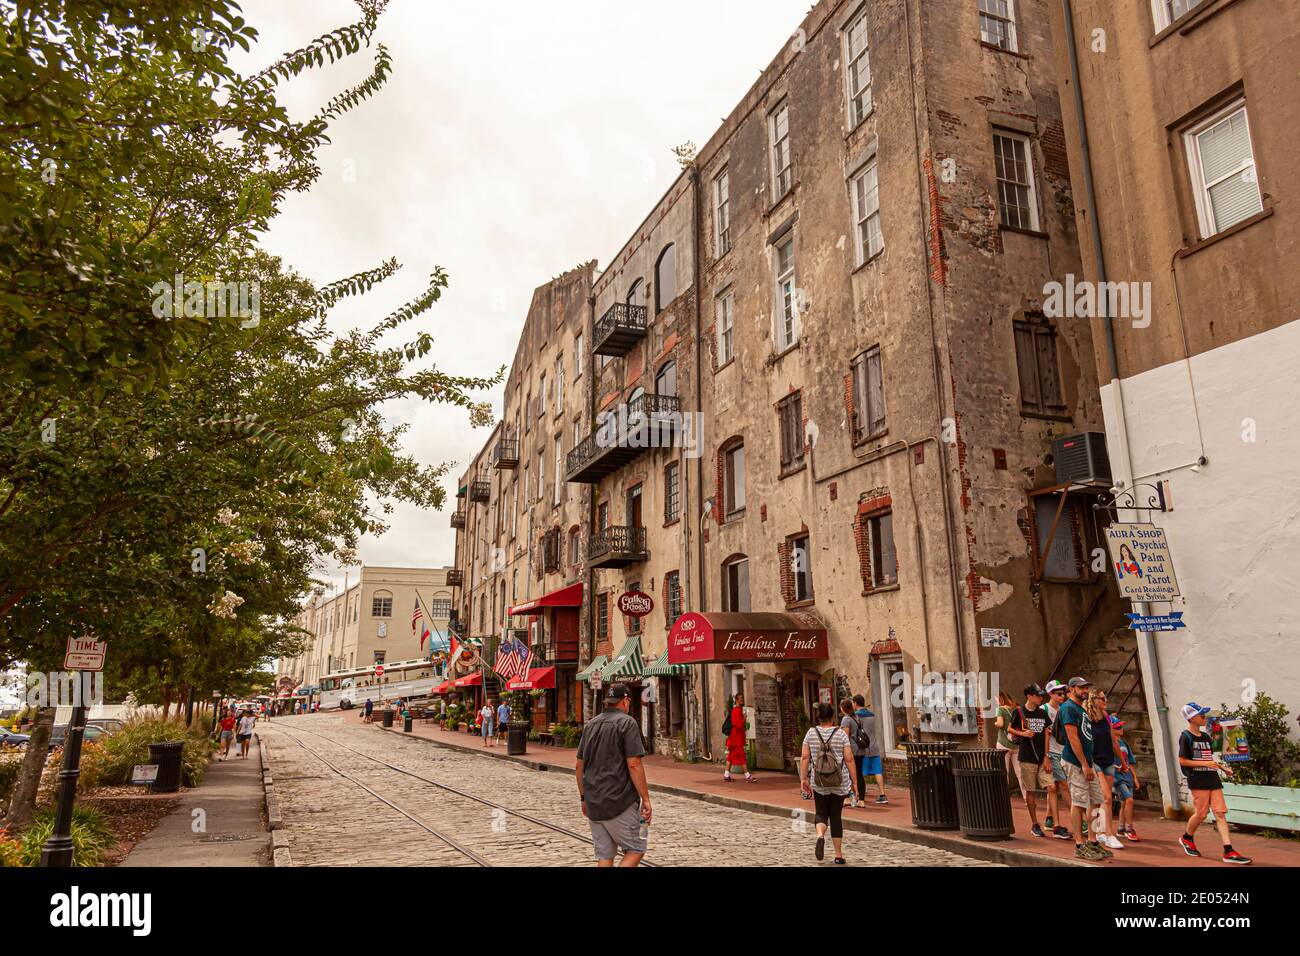 Savannah, GA, USA 07-04-2018: Blick auf die Altstadt von Savannah mit Touristen zu Fuß auf Kopfsteinpflaster Straßen, lokale Geschäfte Stockfoto